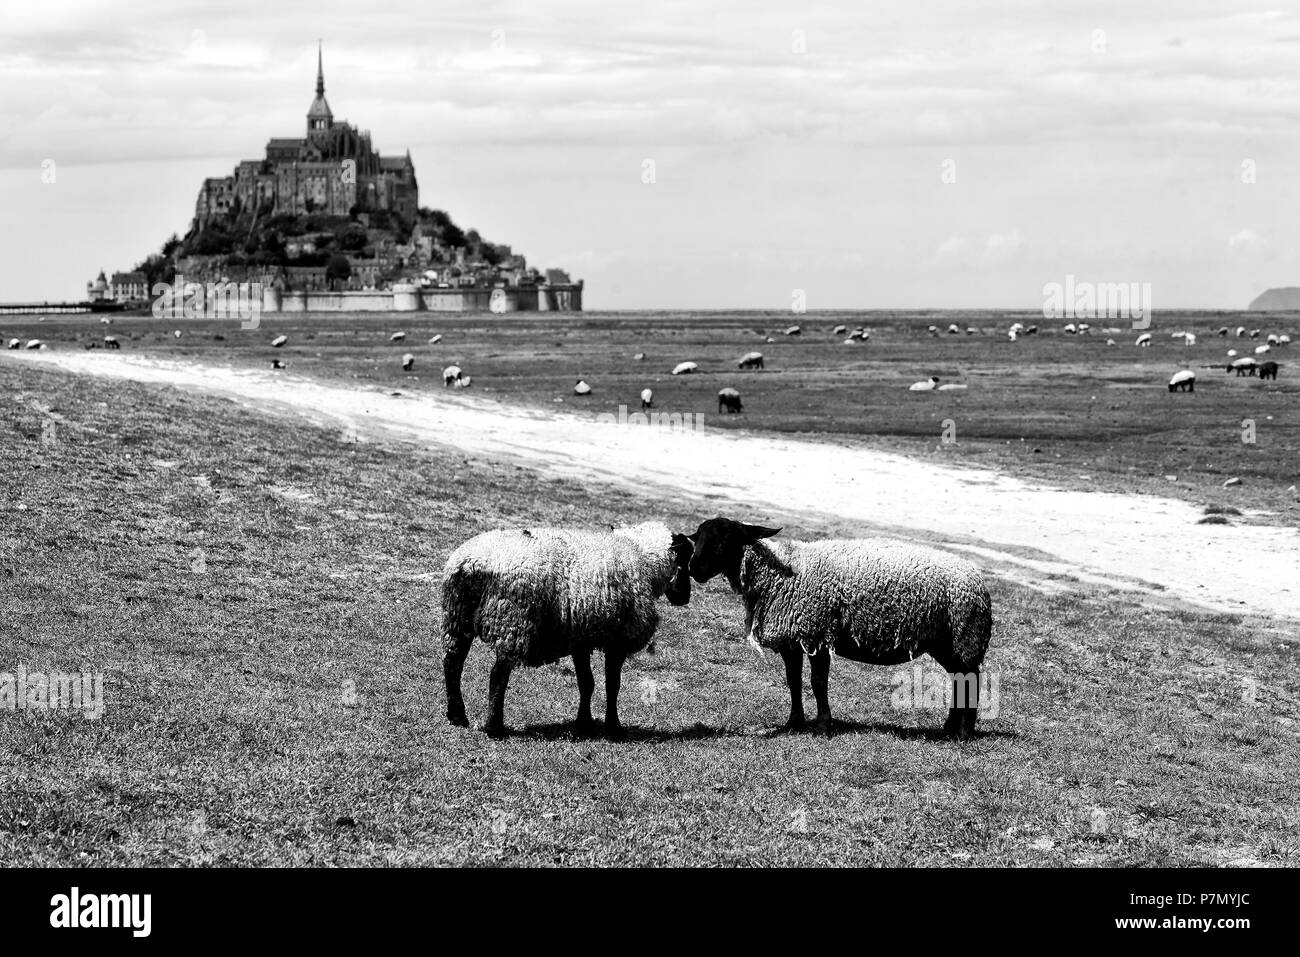 Le Mont Saint Michel, Normandy, France. Stock Photo